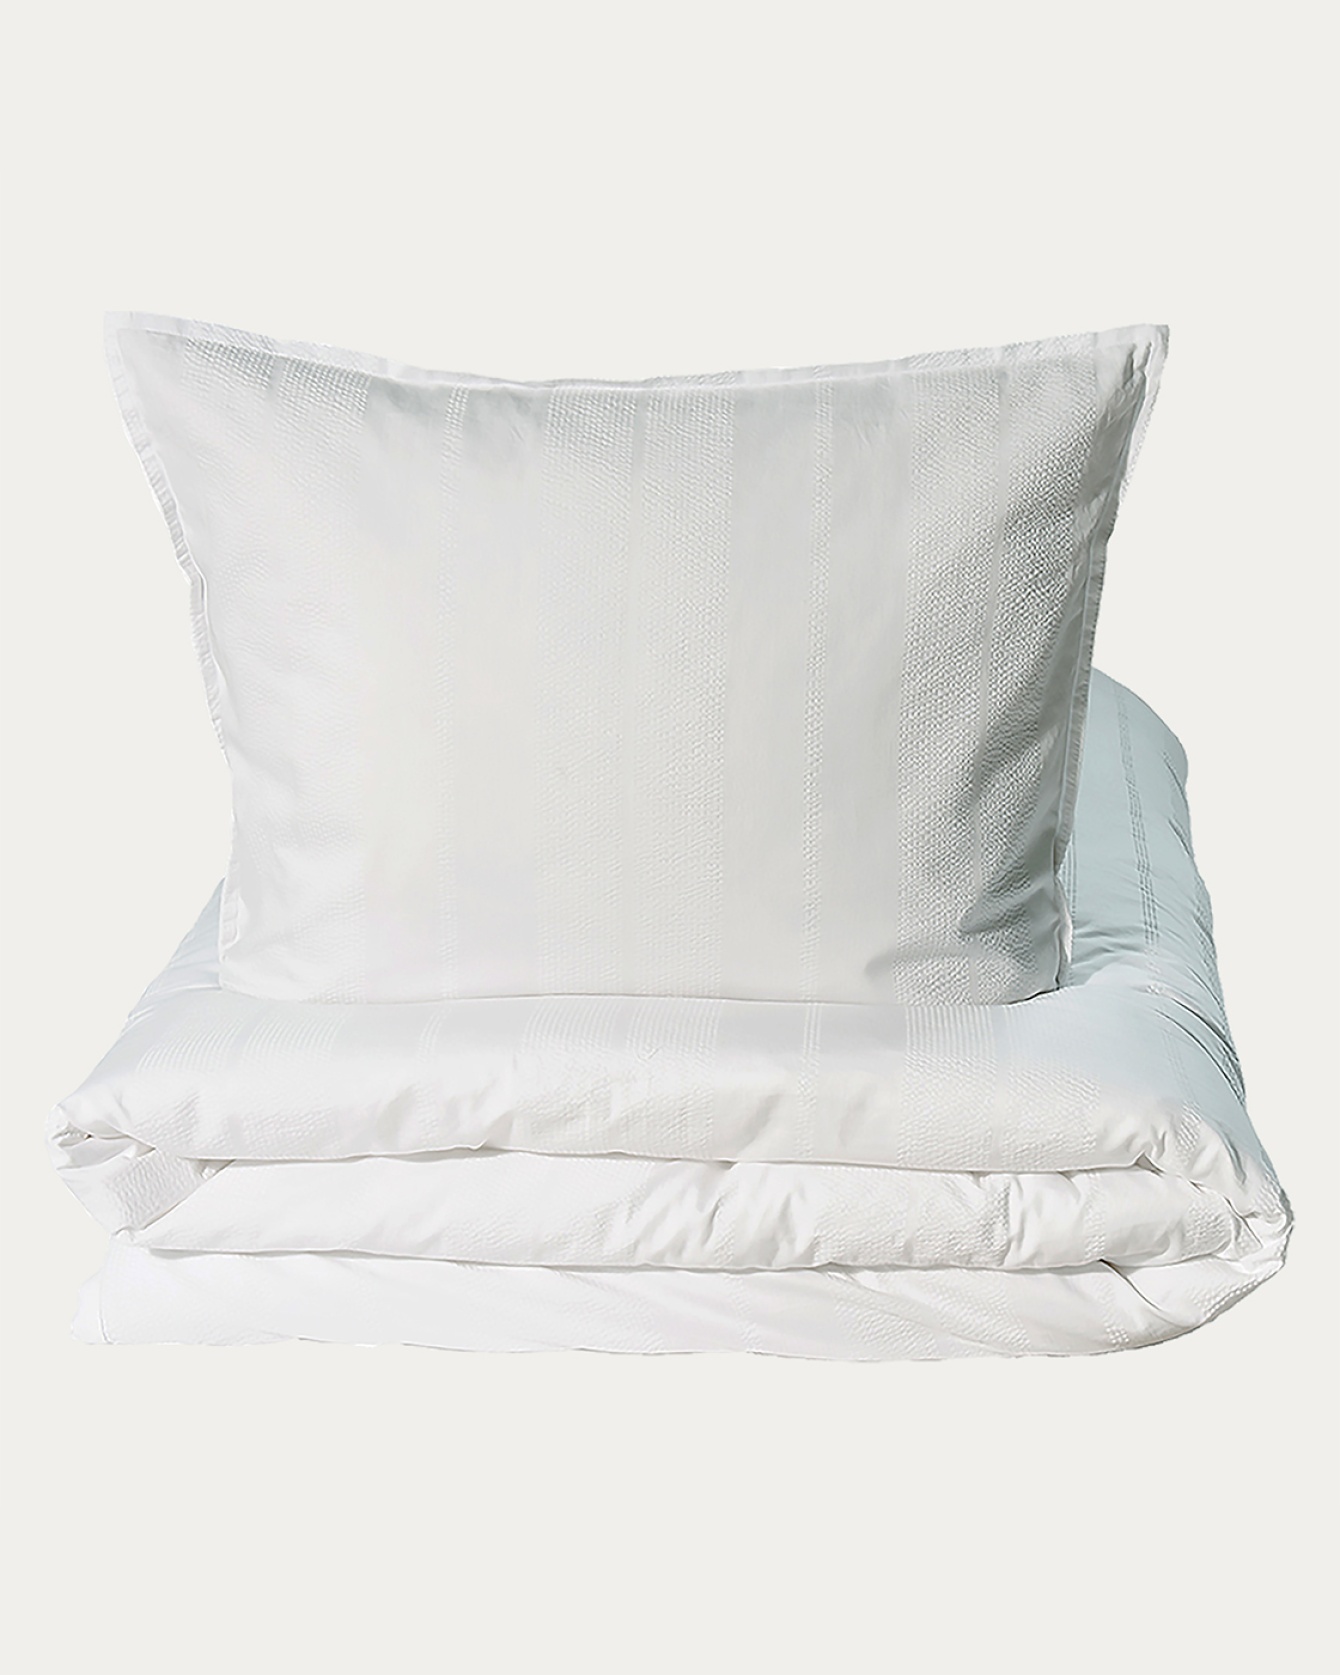 Produktbild strahlendes weiß YASMIN Bettwäscheset aus 100% Bio-Baumwollsatin von LINUM DESIGN. Größe Bettbezug 220x220 cm, zwei Kopfkissenbezüge 50x60 cm.